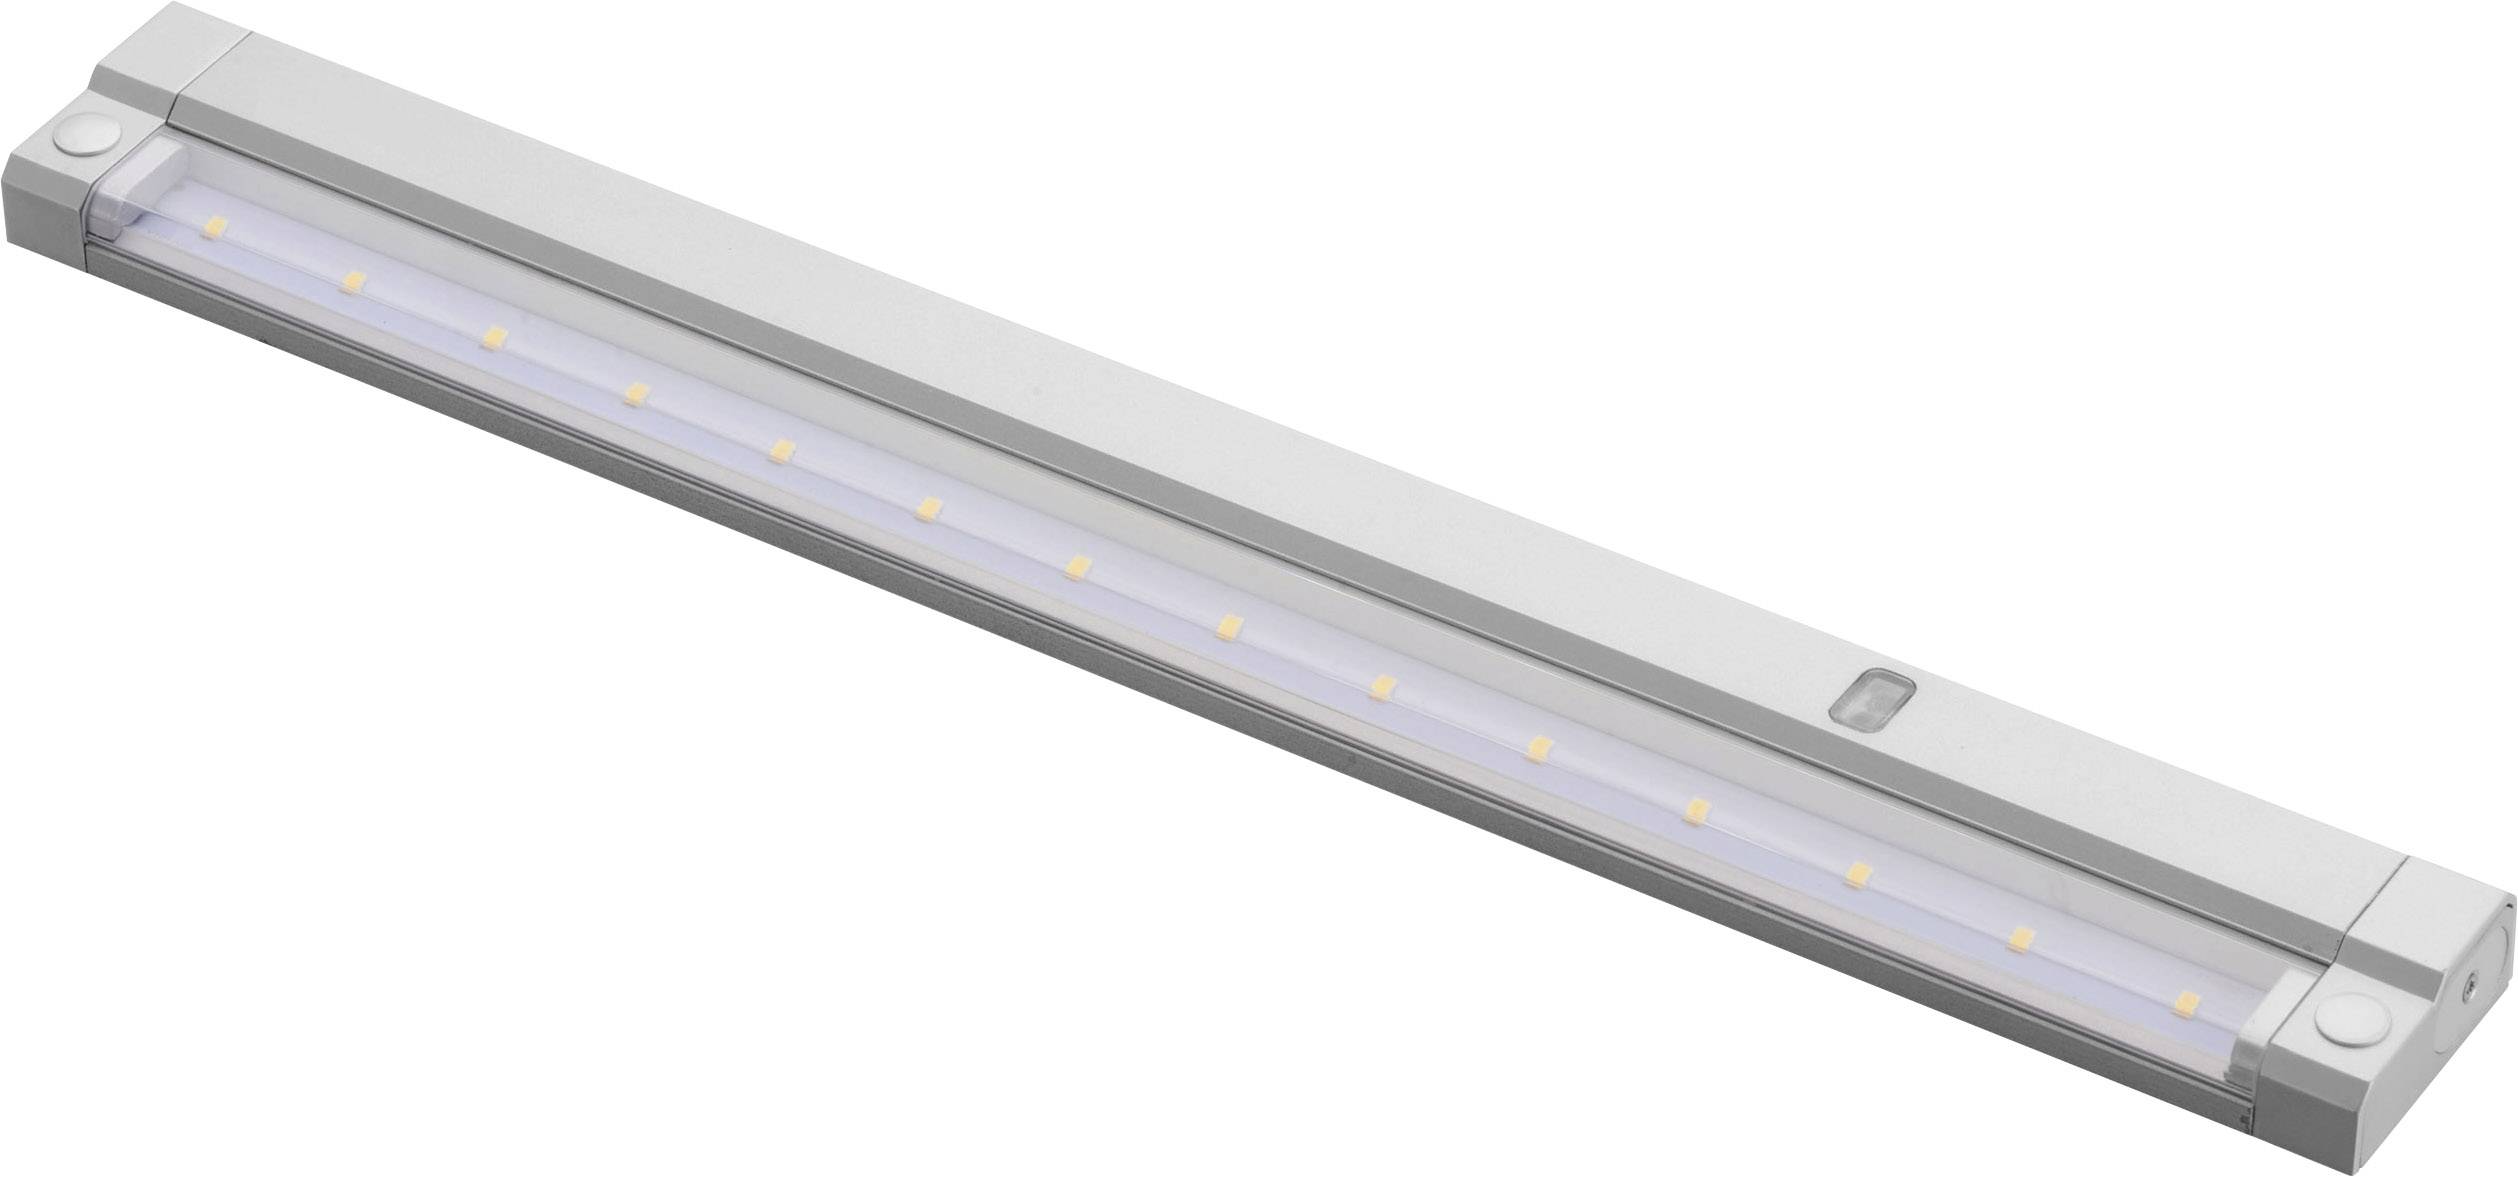 MEGAMAN LED-Unterbauleuchte mit Bewegungsmelder 5 W Warm-Weiß Megatron MT70131 Unta Silber